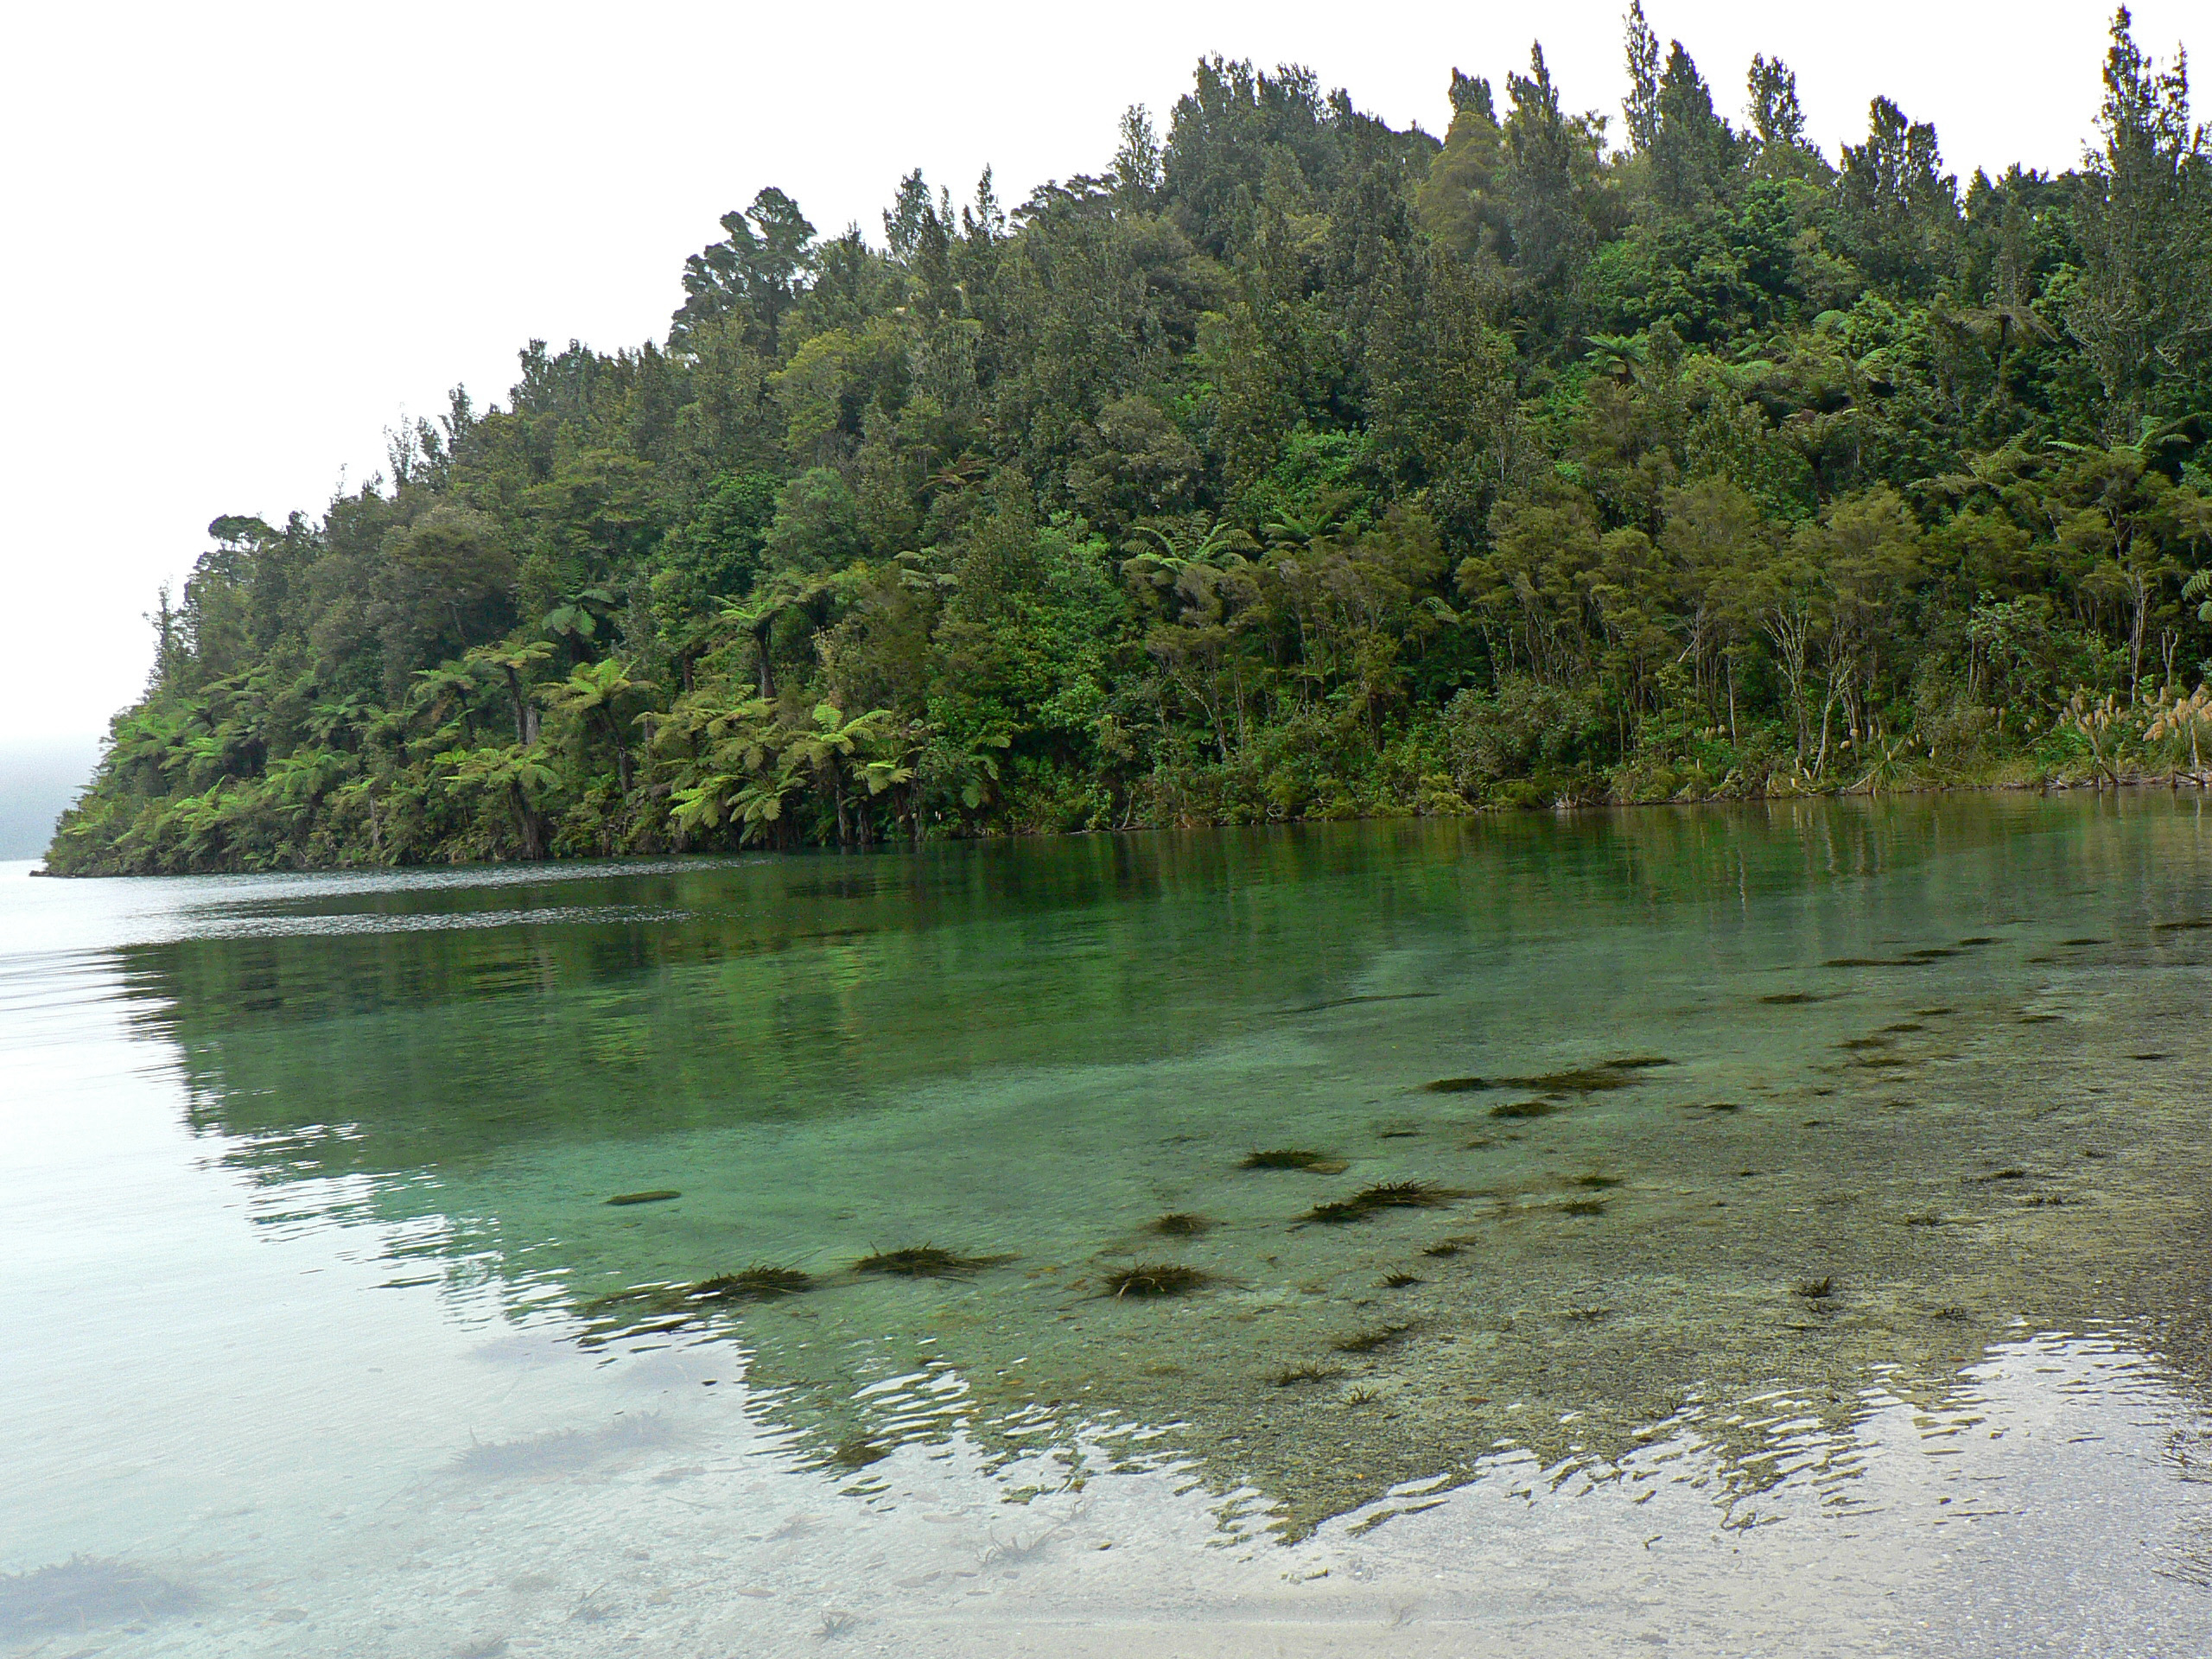 Lake Okataina.